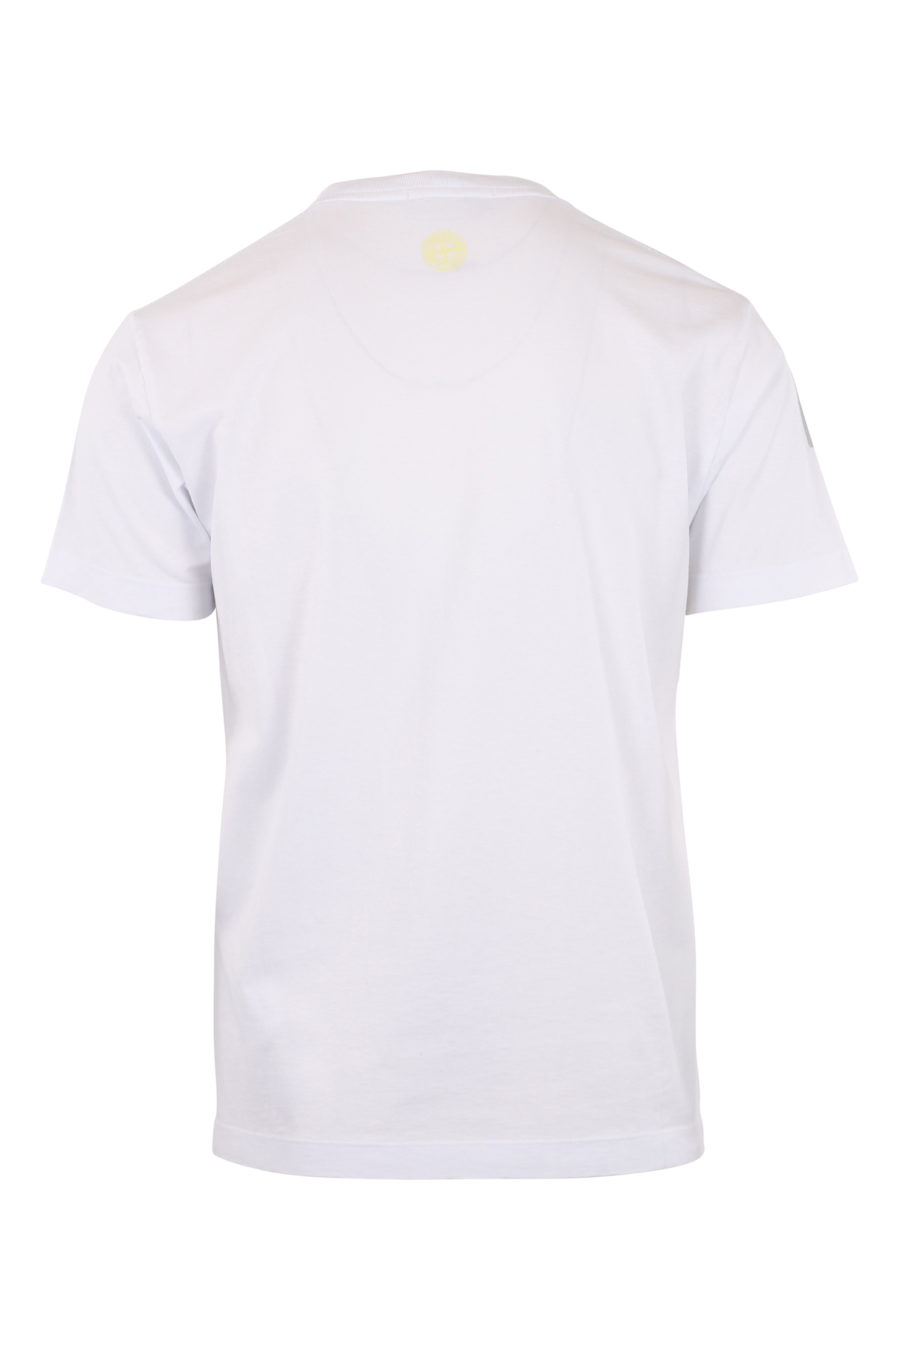 T-shirt branca com logótipo distorcido amarelo e verde - IMG 9644